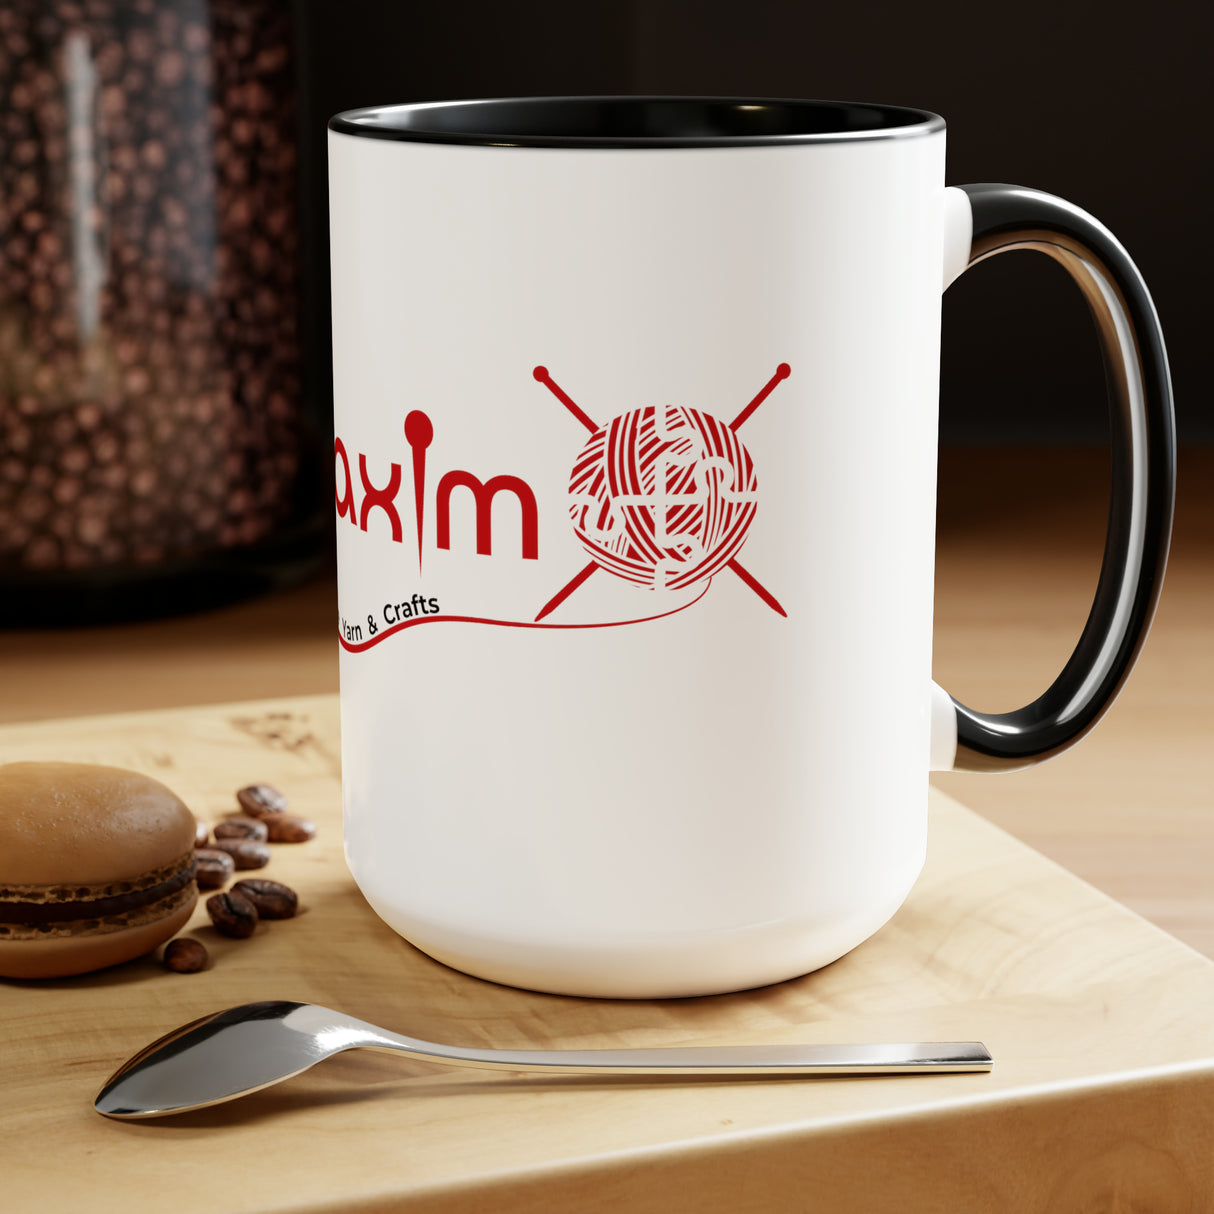 Mary Maxim Two-Tone Coffee Mugs - 15oz